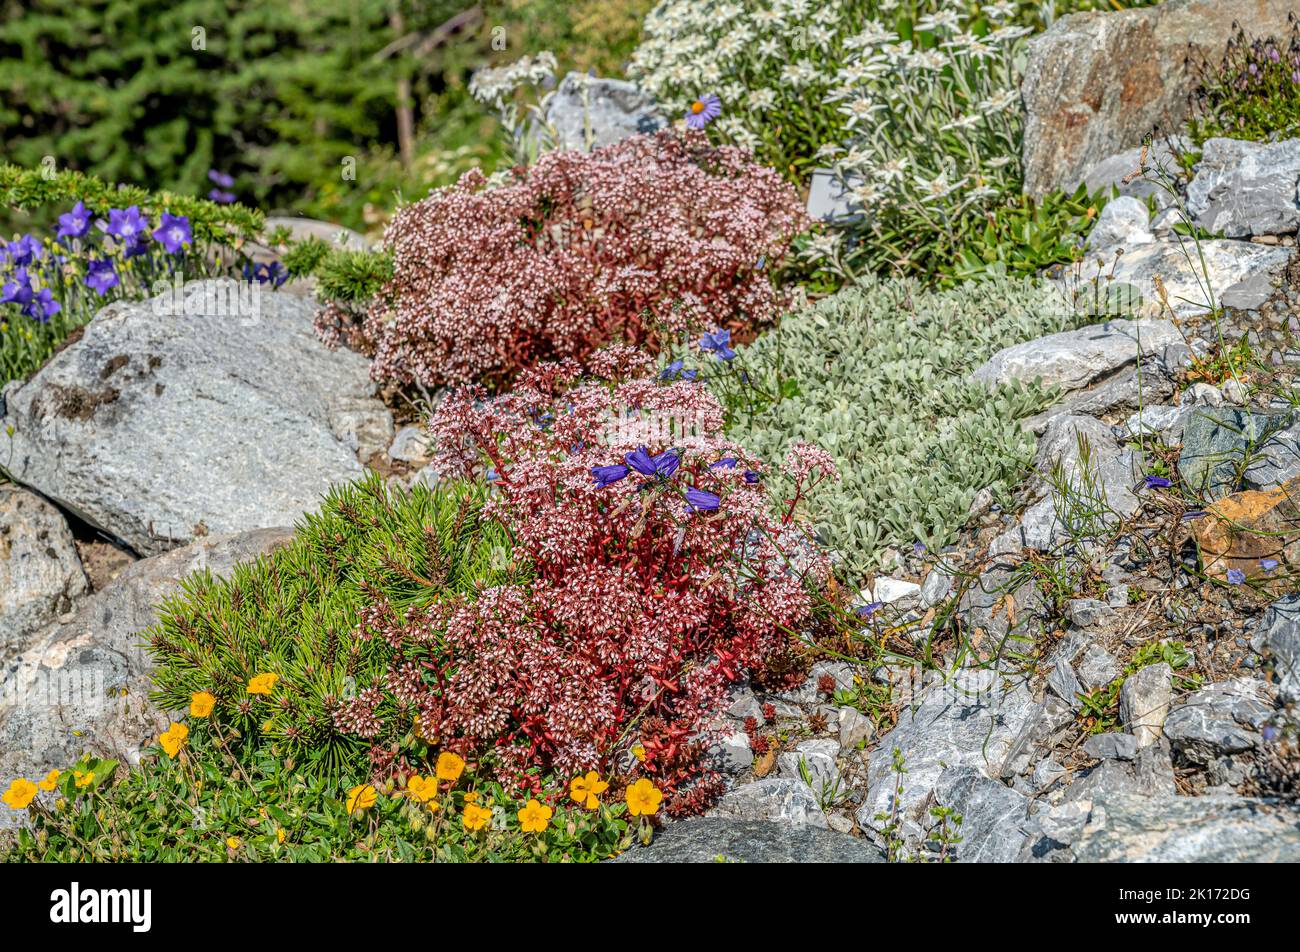 Jardin de rochers avec fleurs alpines dans le jardin botanique alpin 'Alpinum' sur le Schatzalp près de Davos, Grisons, Suisse Banque D'Images